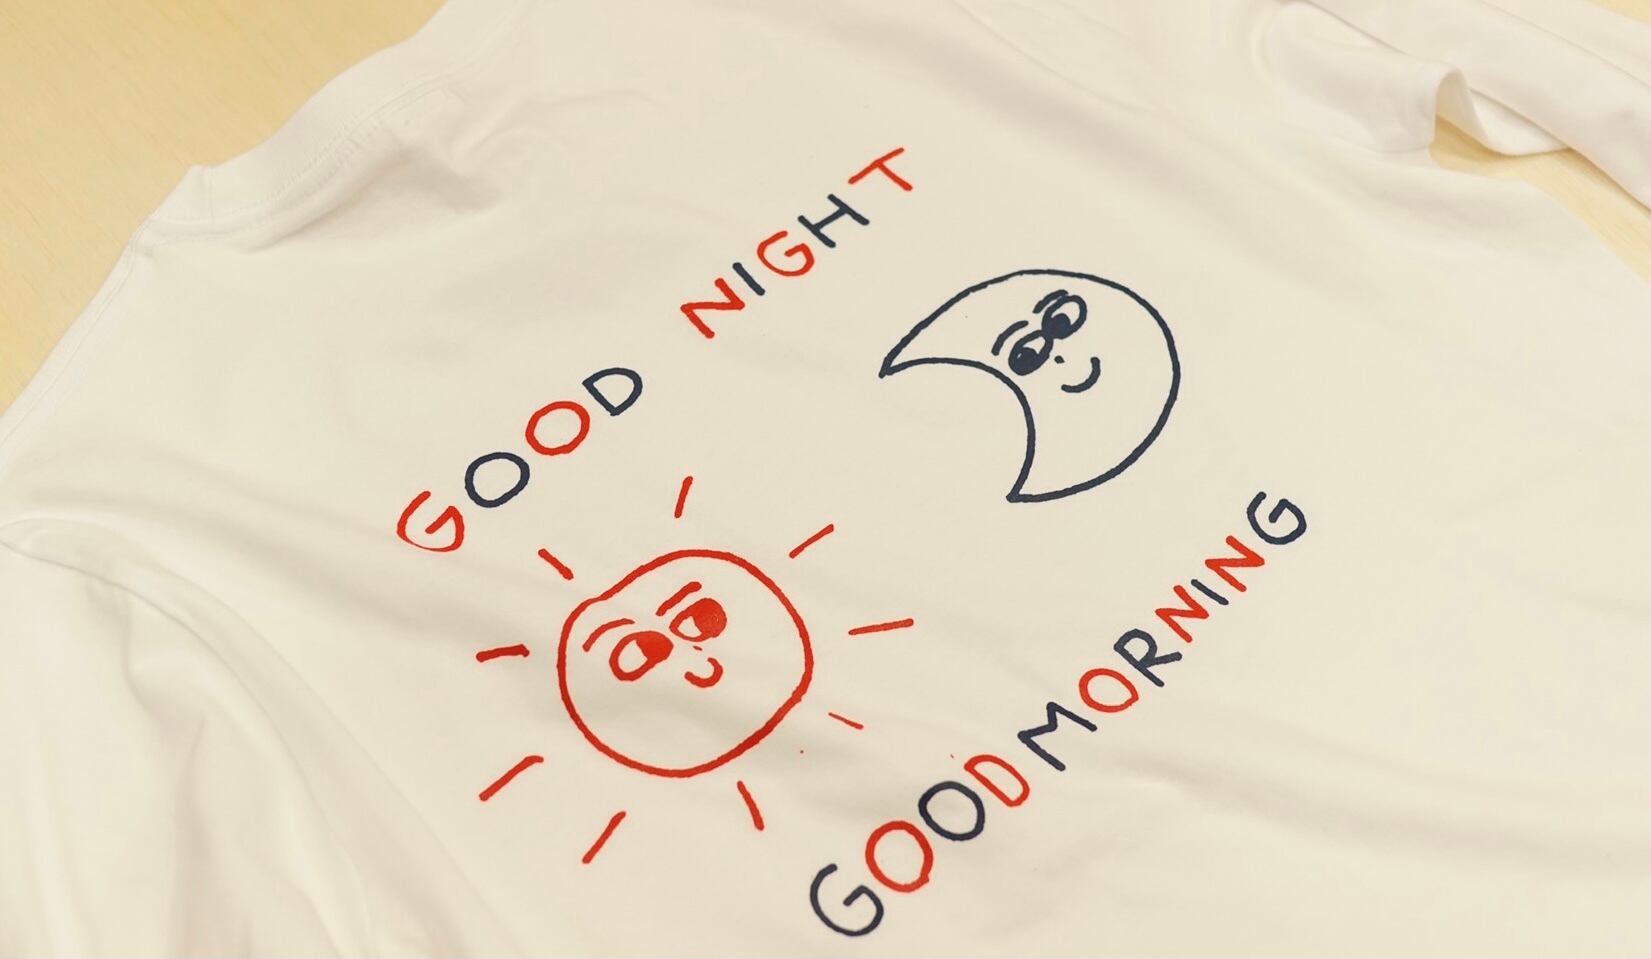 good night store Tシャツ